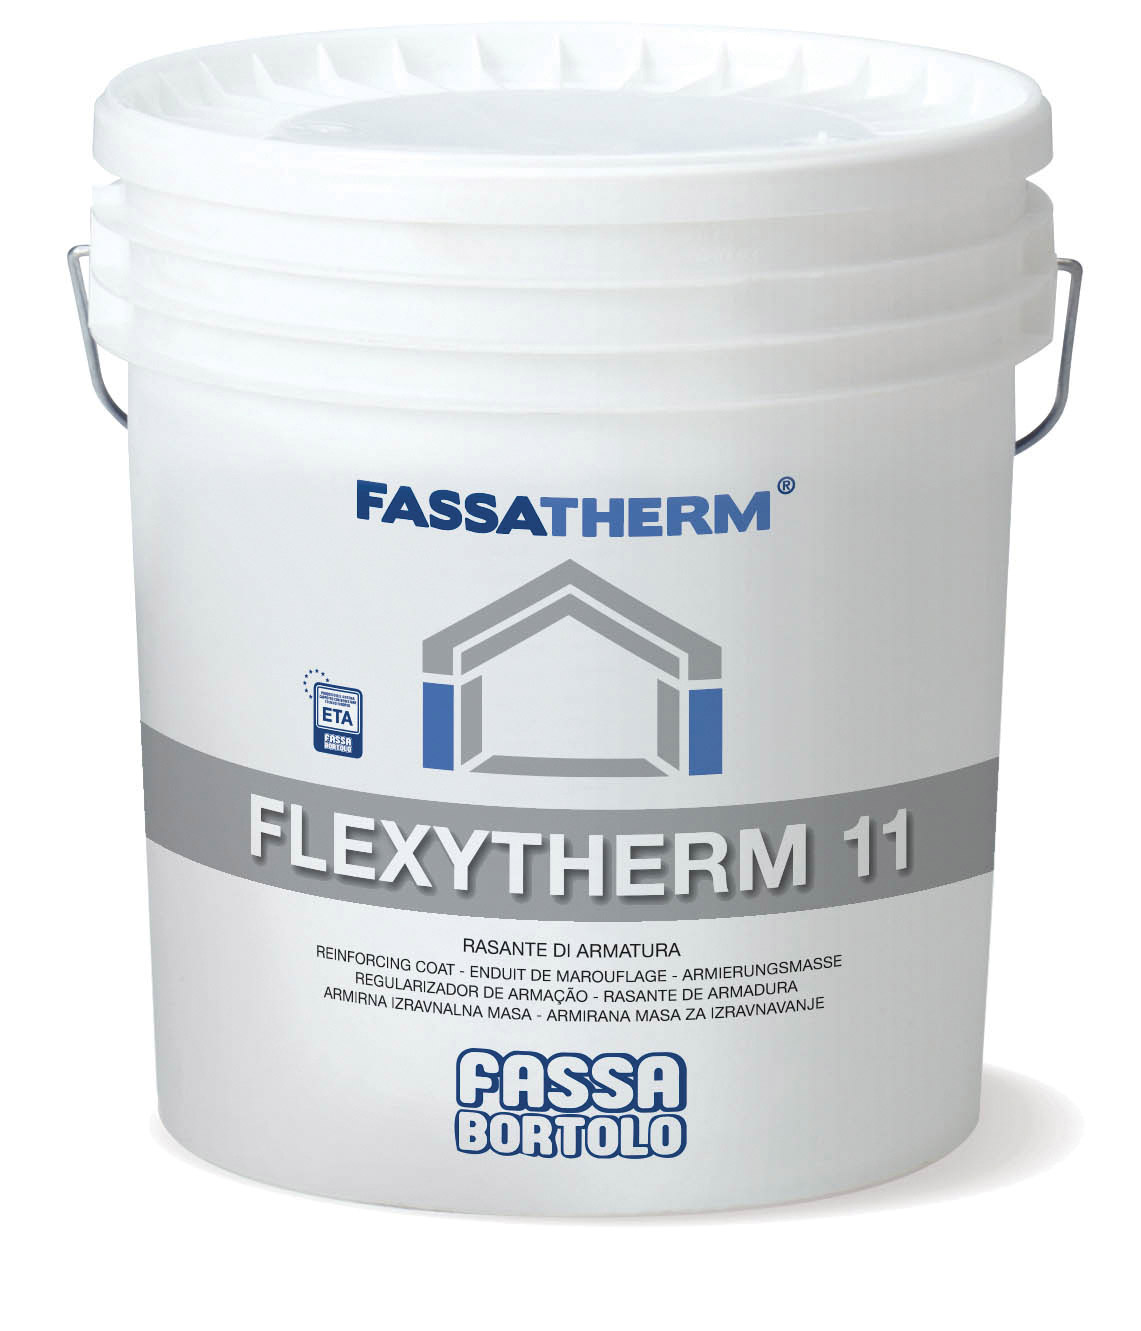 FLEXYTHERM 11: Ready-to-use fibre-reinforced skim coat paste